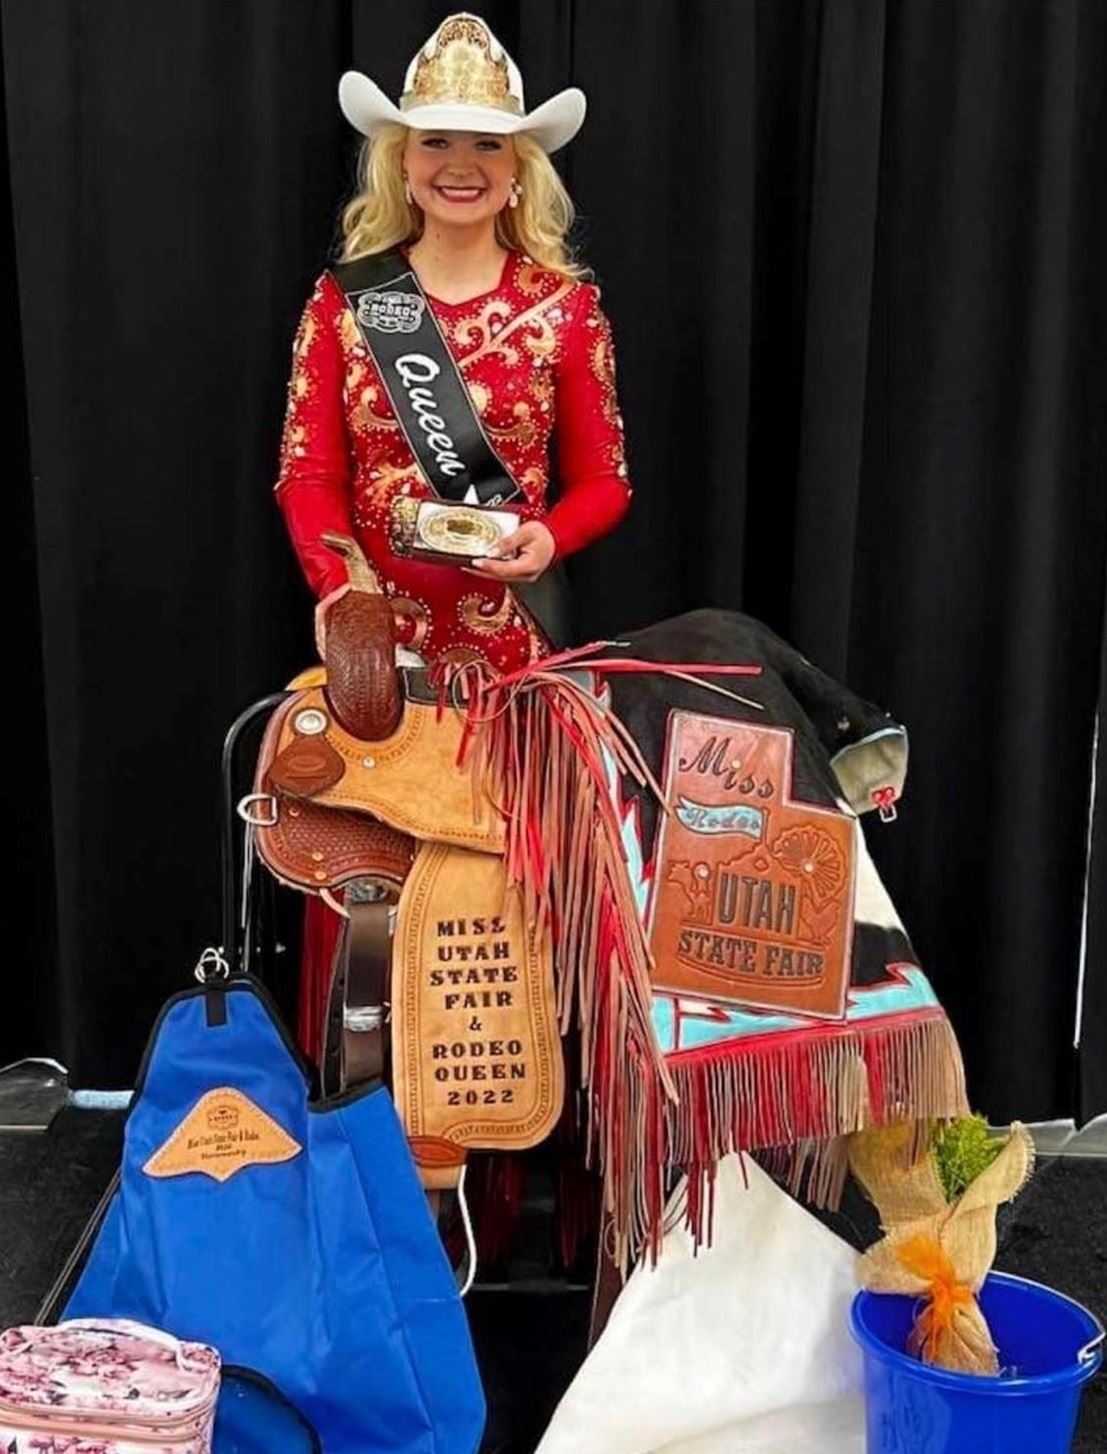 Miss Utah State Fair & Rodeo